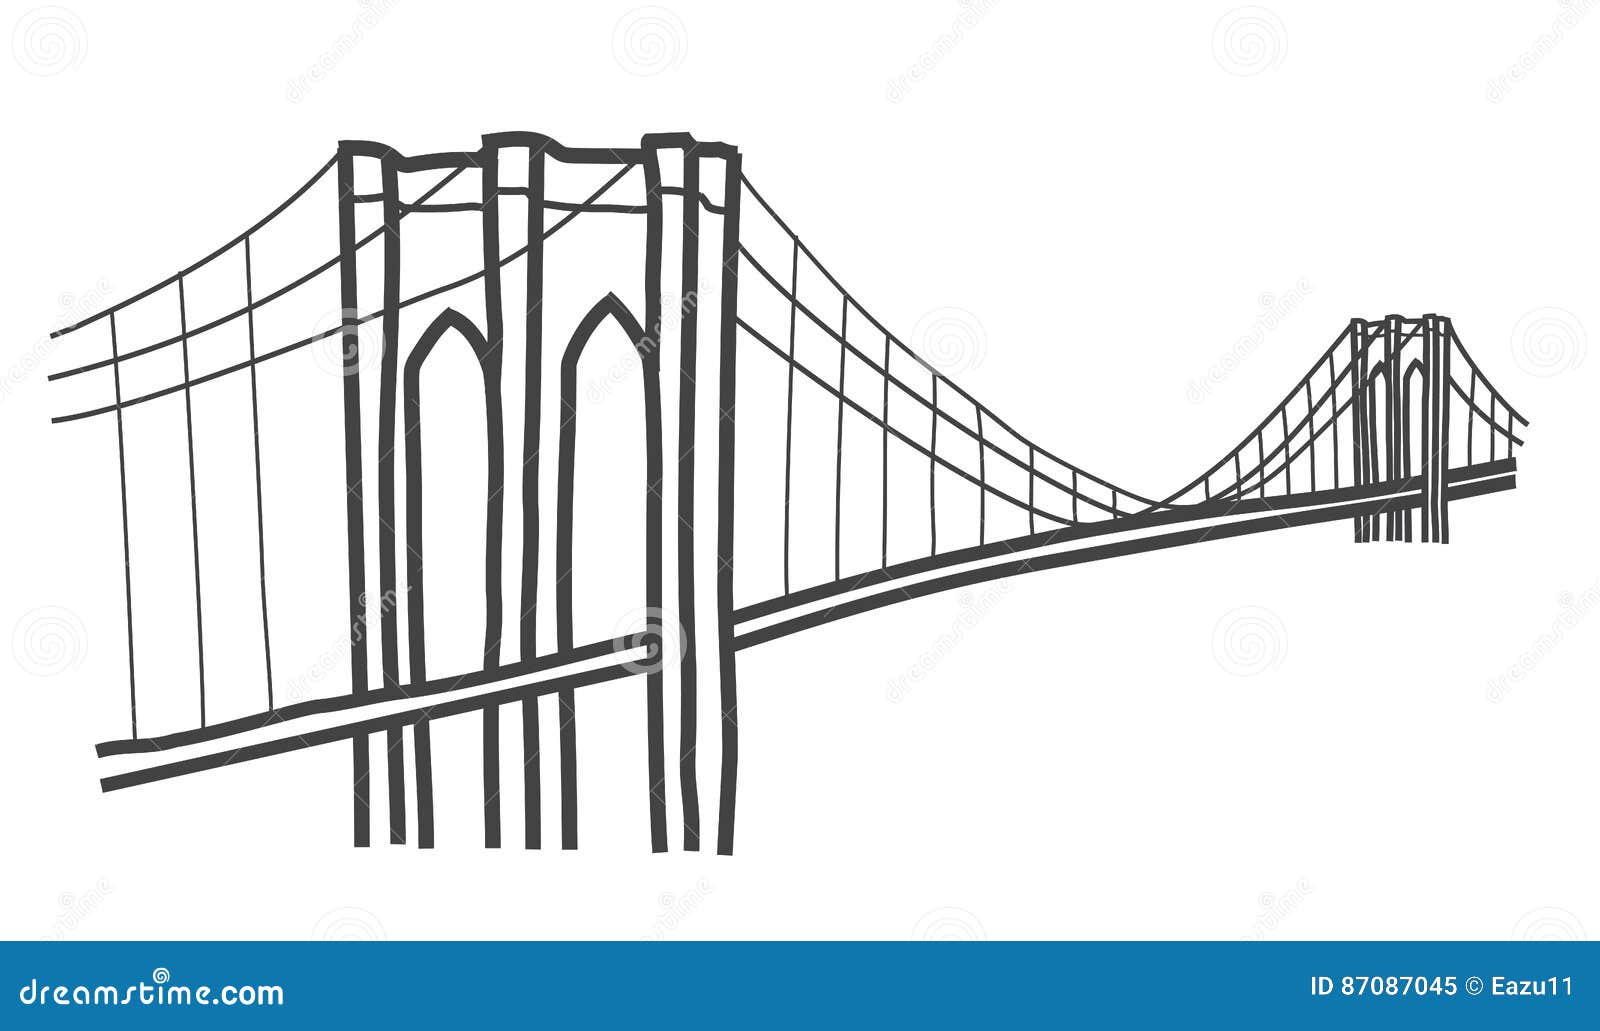 suspension bridge drawing easy  Clip Art Library